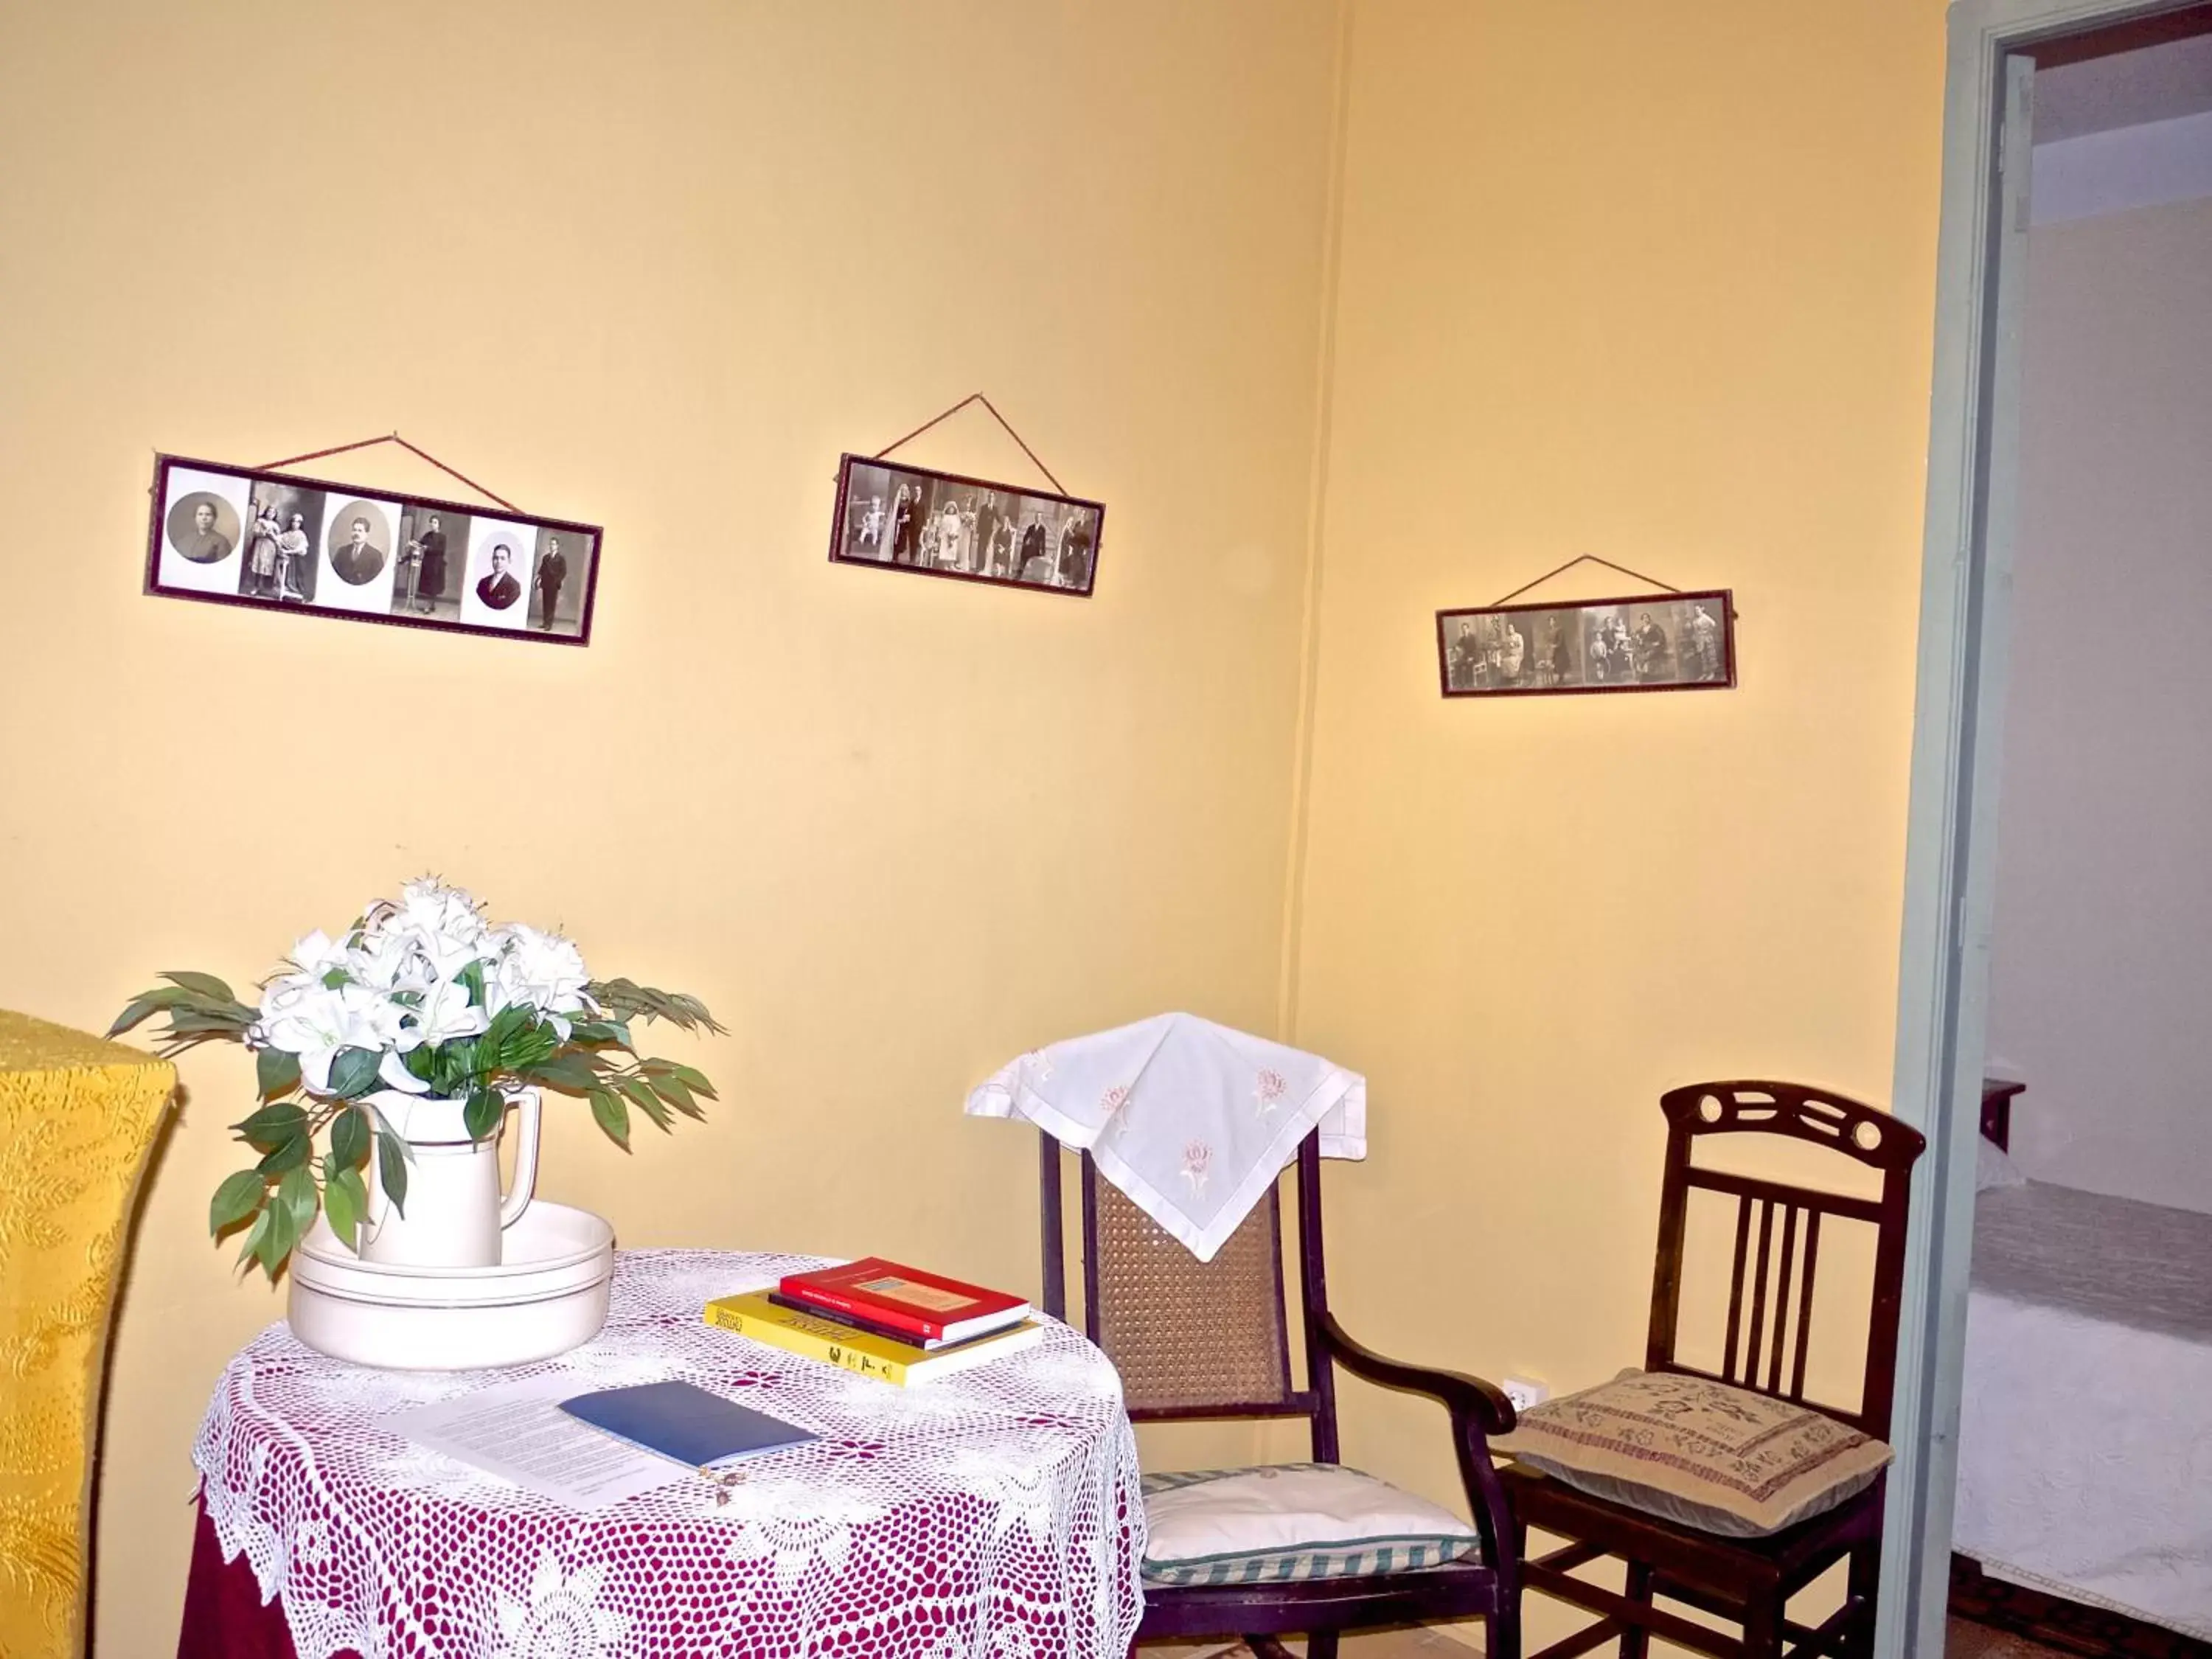 Coffee/tea facilities, Seating Area in Olmitos 3 Hotel boutique, Casa-Palacio